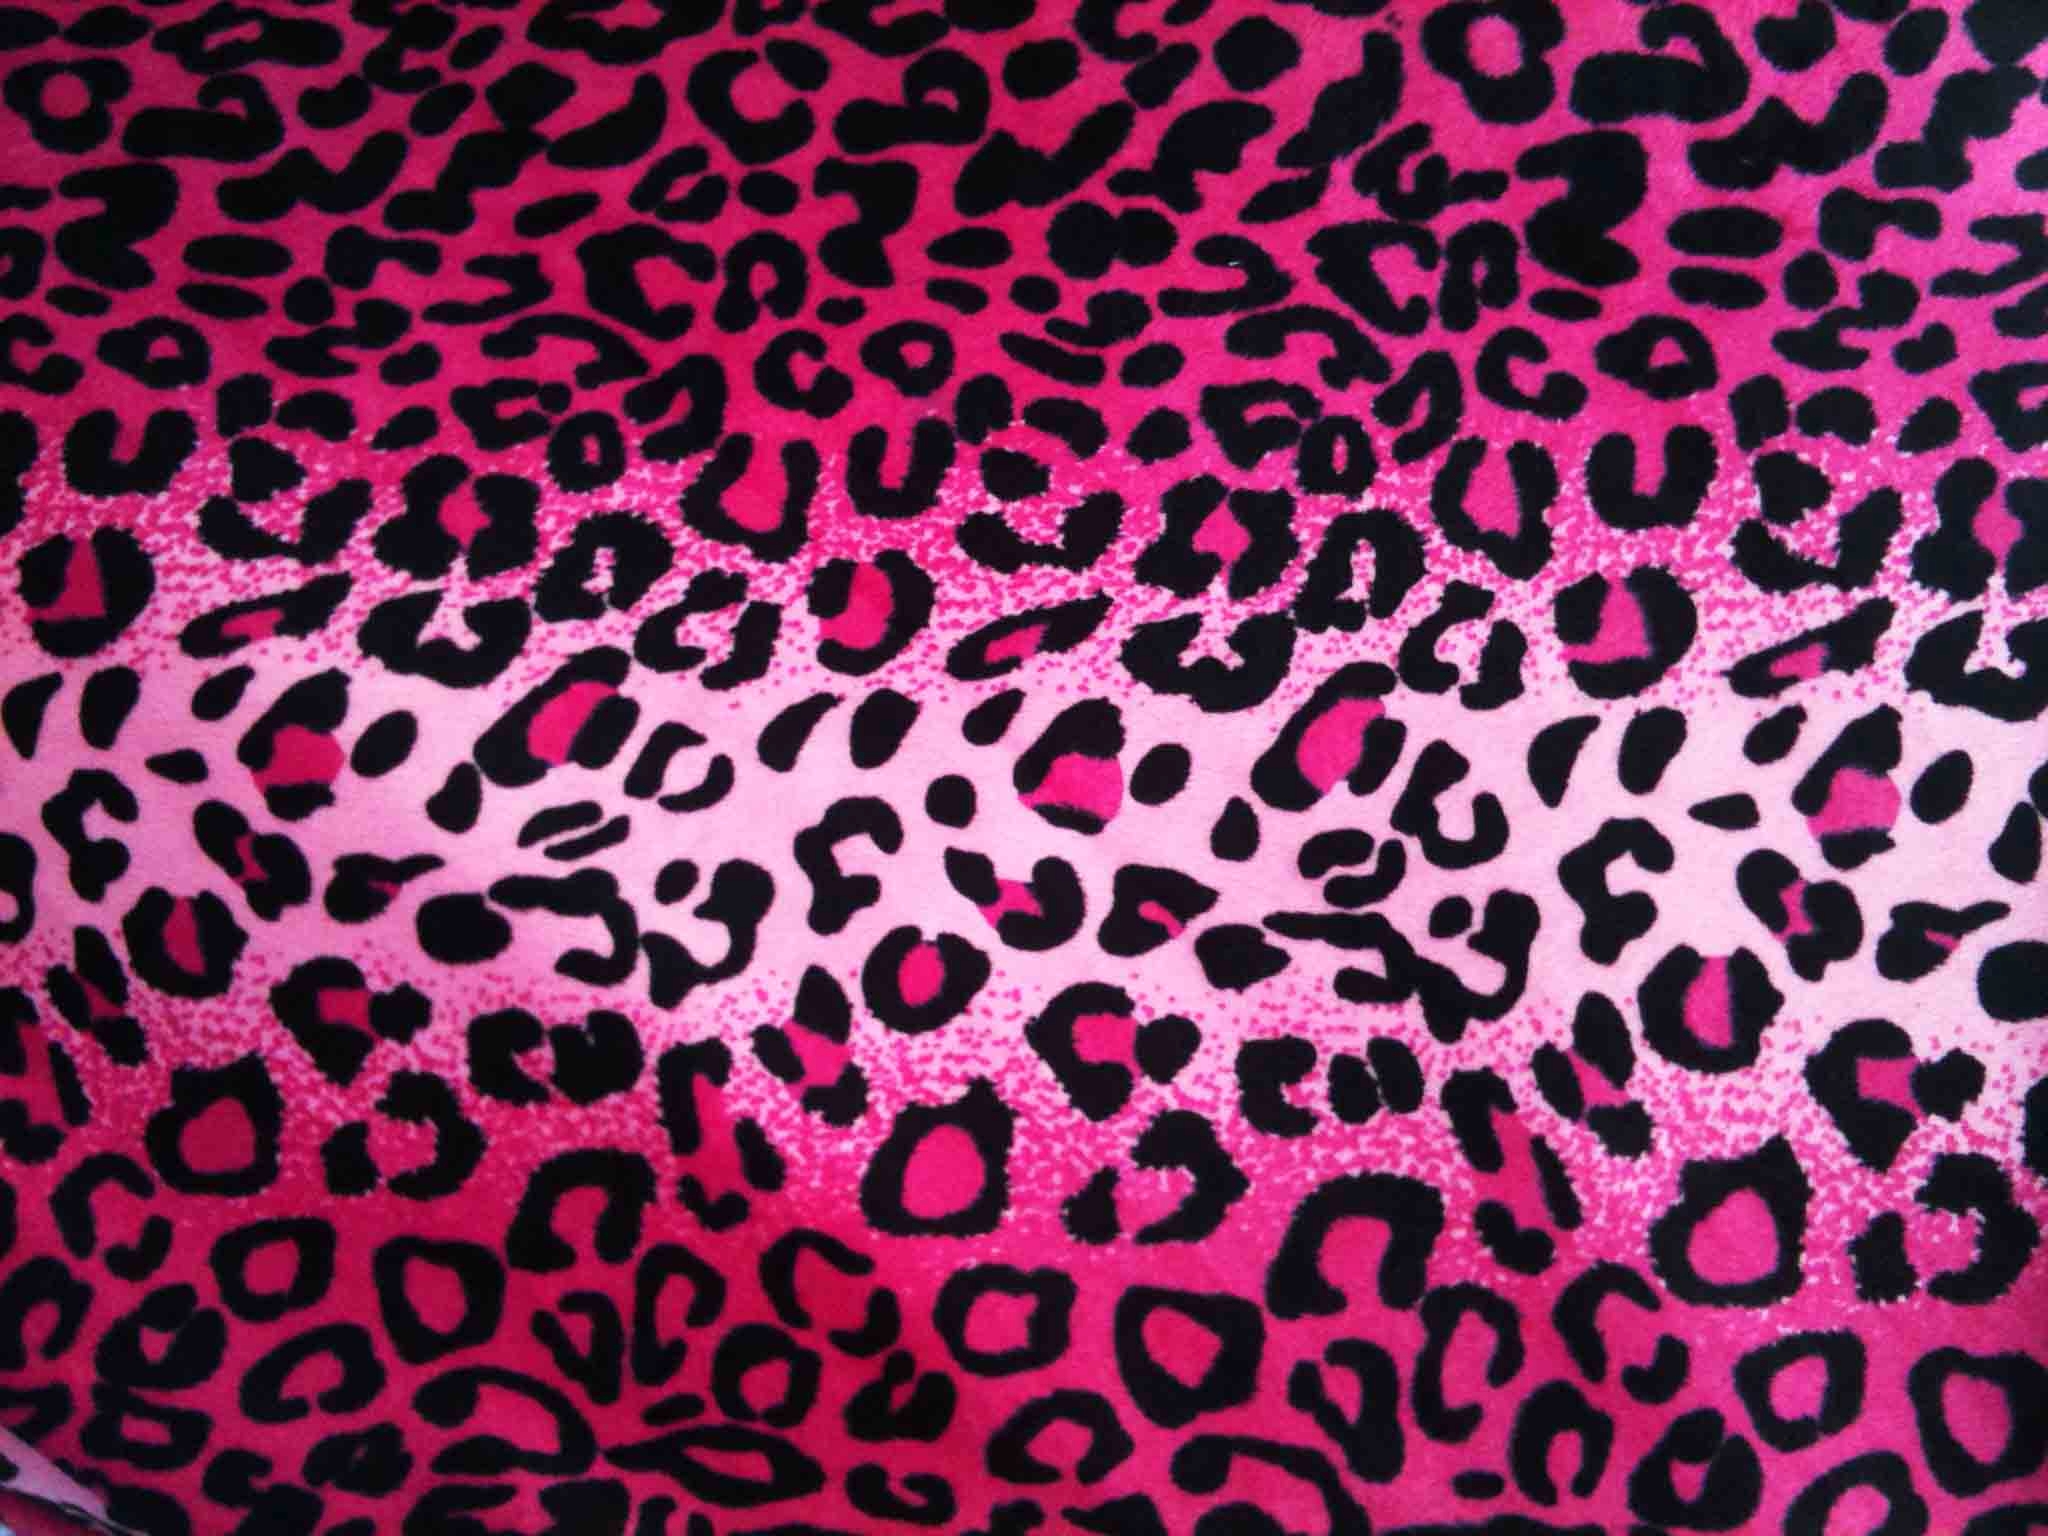  wallpaper Pink Cheetah Backgrounds hd wallpaper background desktop